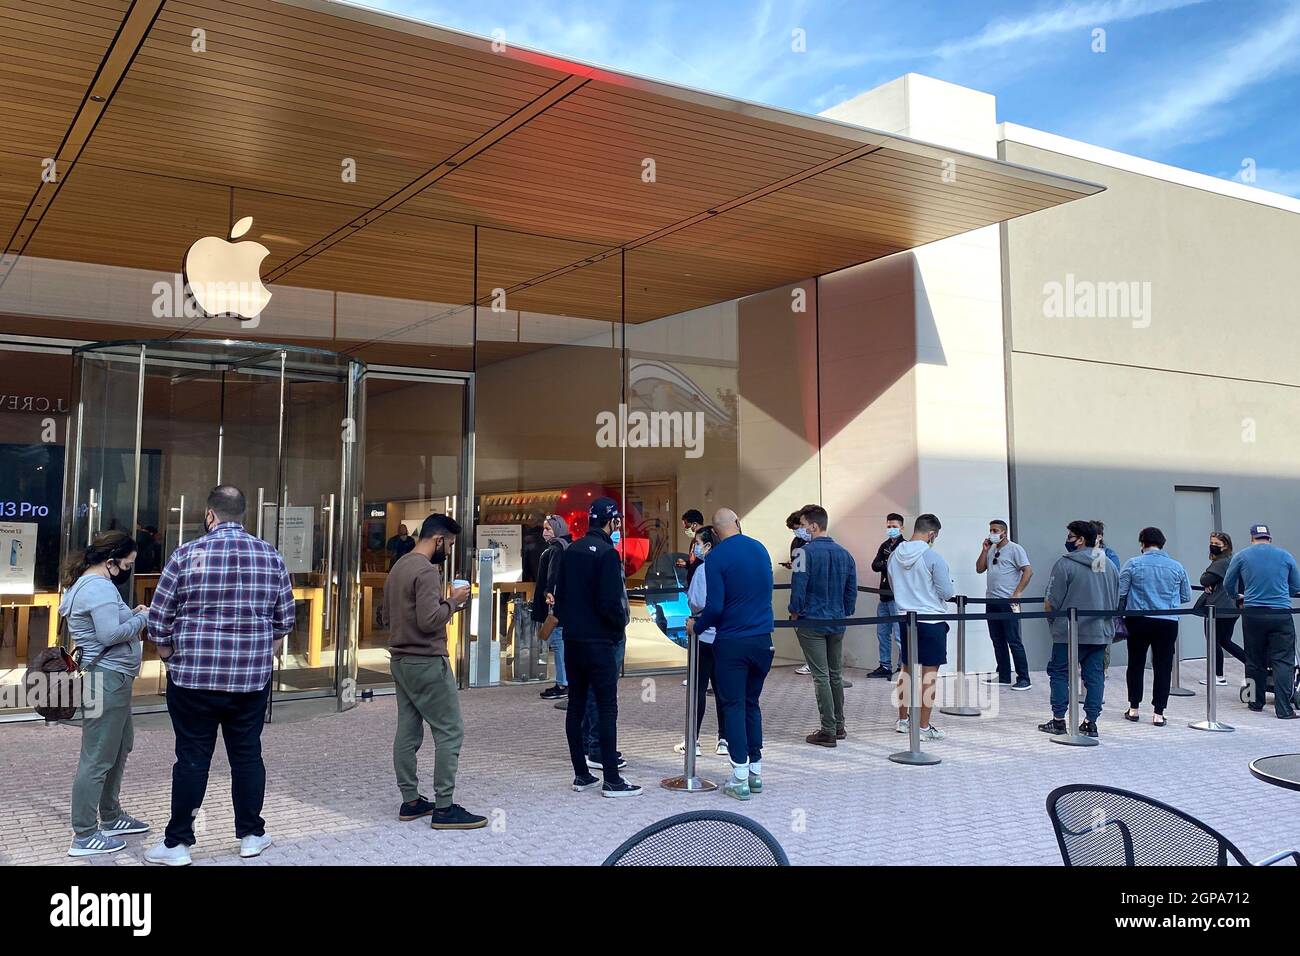 Les acheteurs se sont alignés devant l'Apple Store du centre commercial Old Orchard, peu de temps après la sortie de l'iPhone 13. Banque D'Images